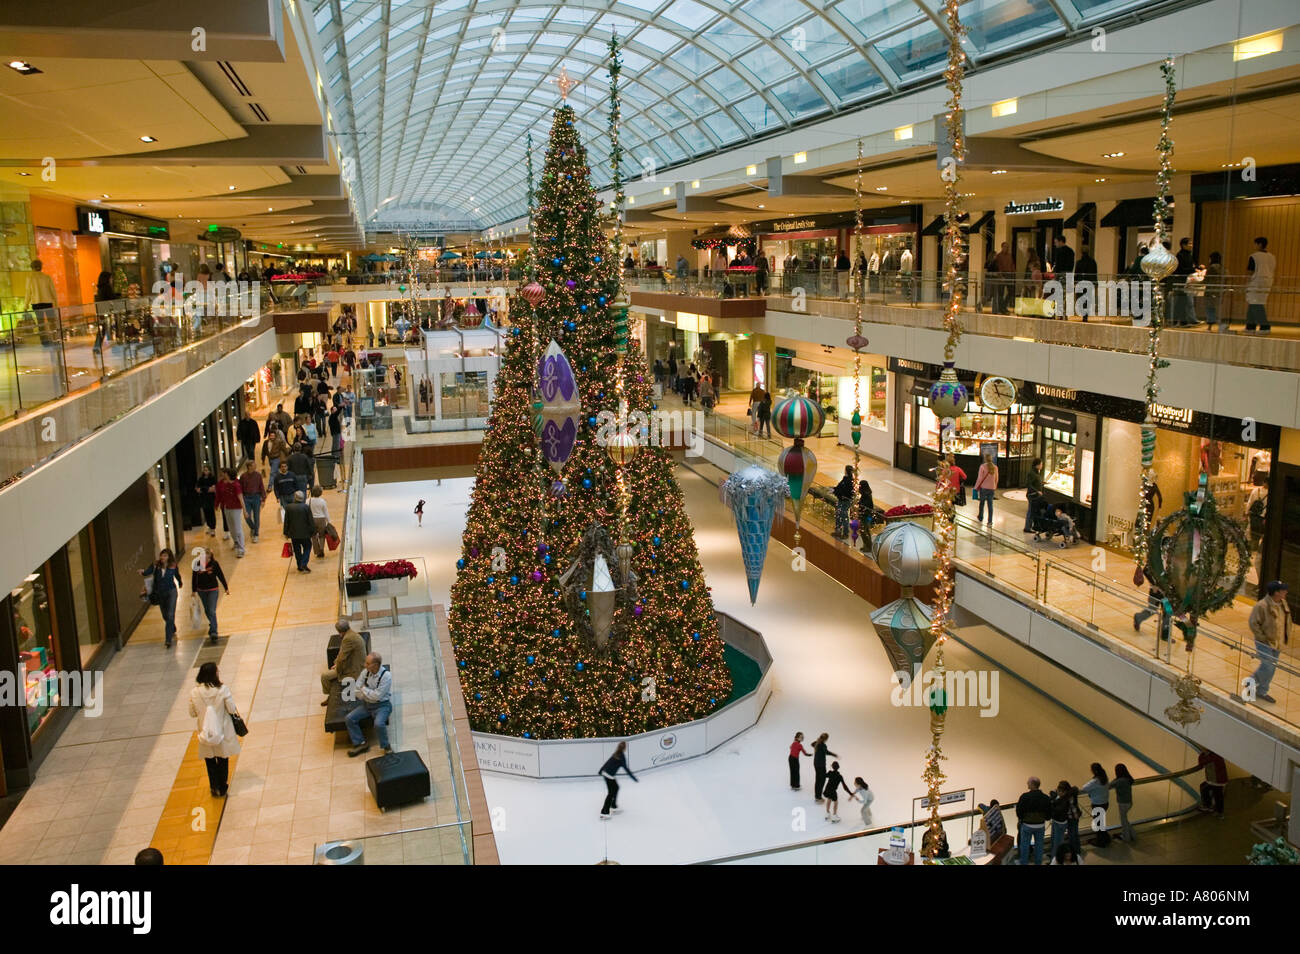 USA, TEXAS, Houston: Houston Galleria Mall Christmas Tree / Ice Stock Photo, Royalty Free Image ...